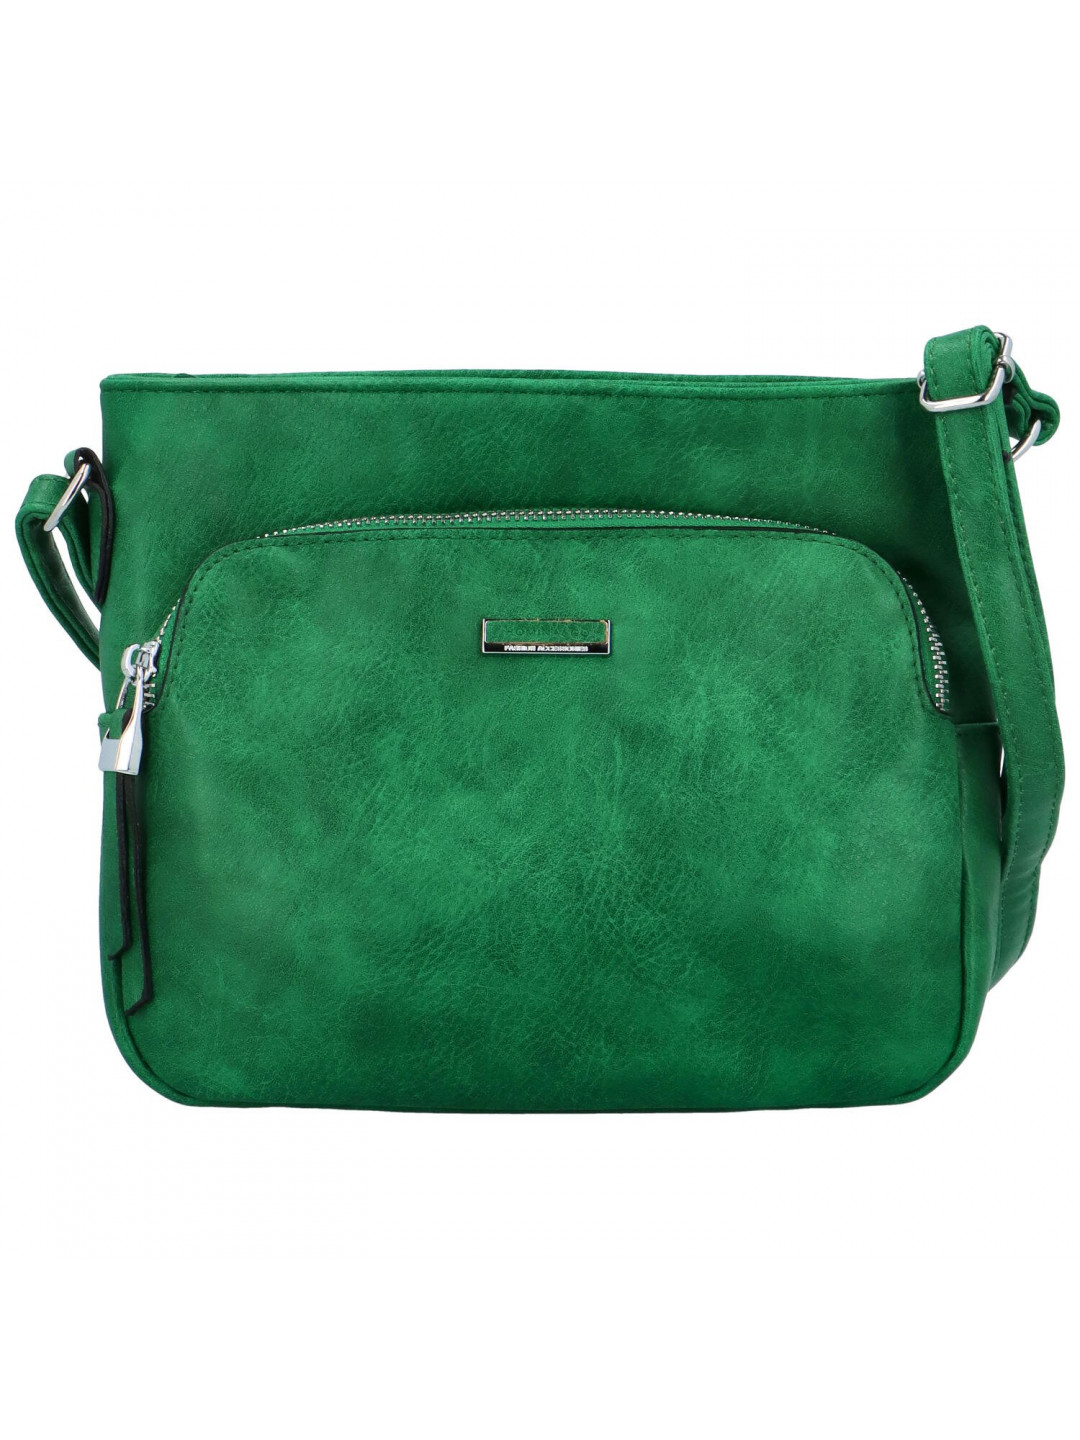 Dámská crossbody kabelka zelená – Romina & Co Bags Risttin